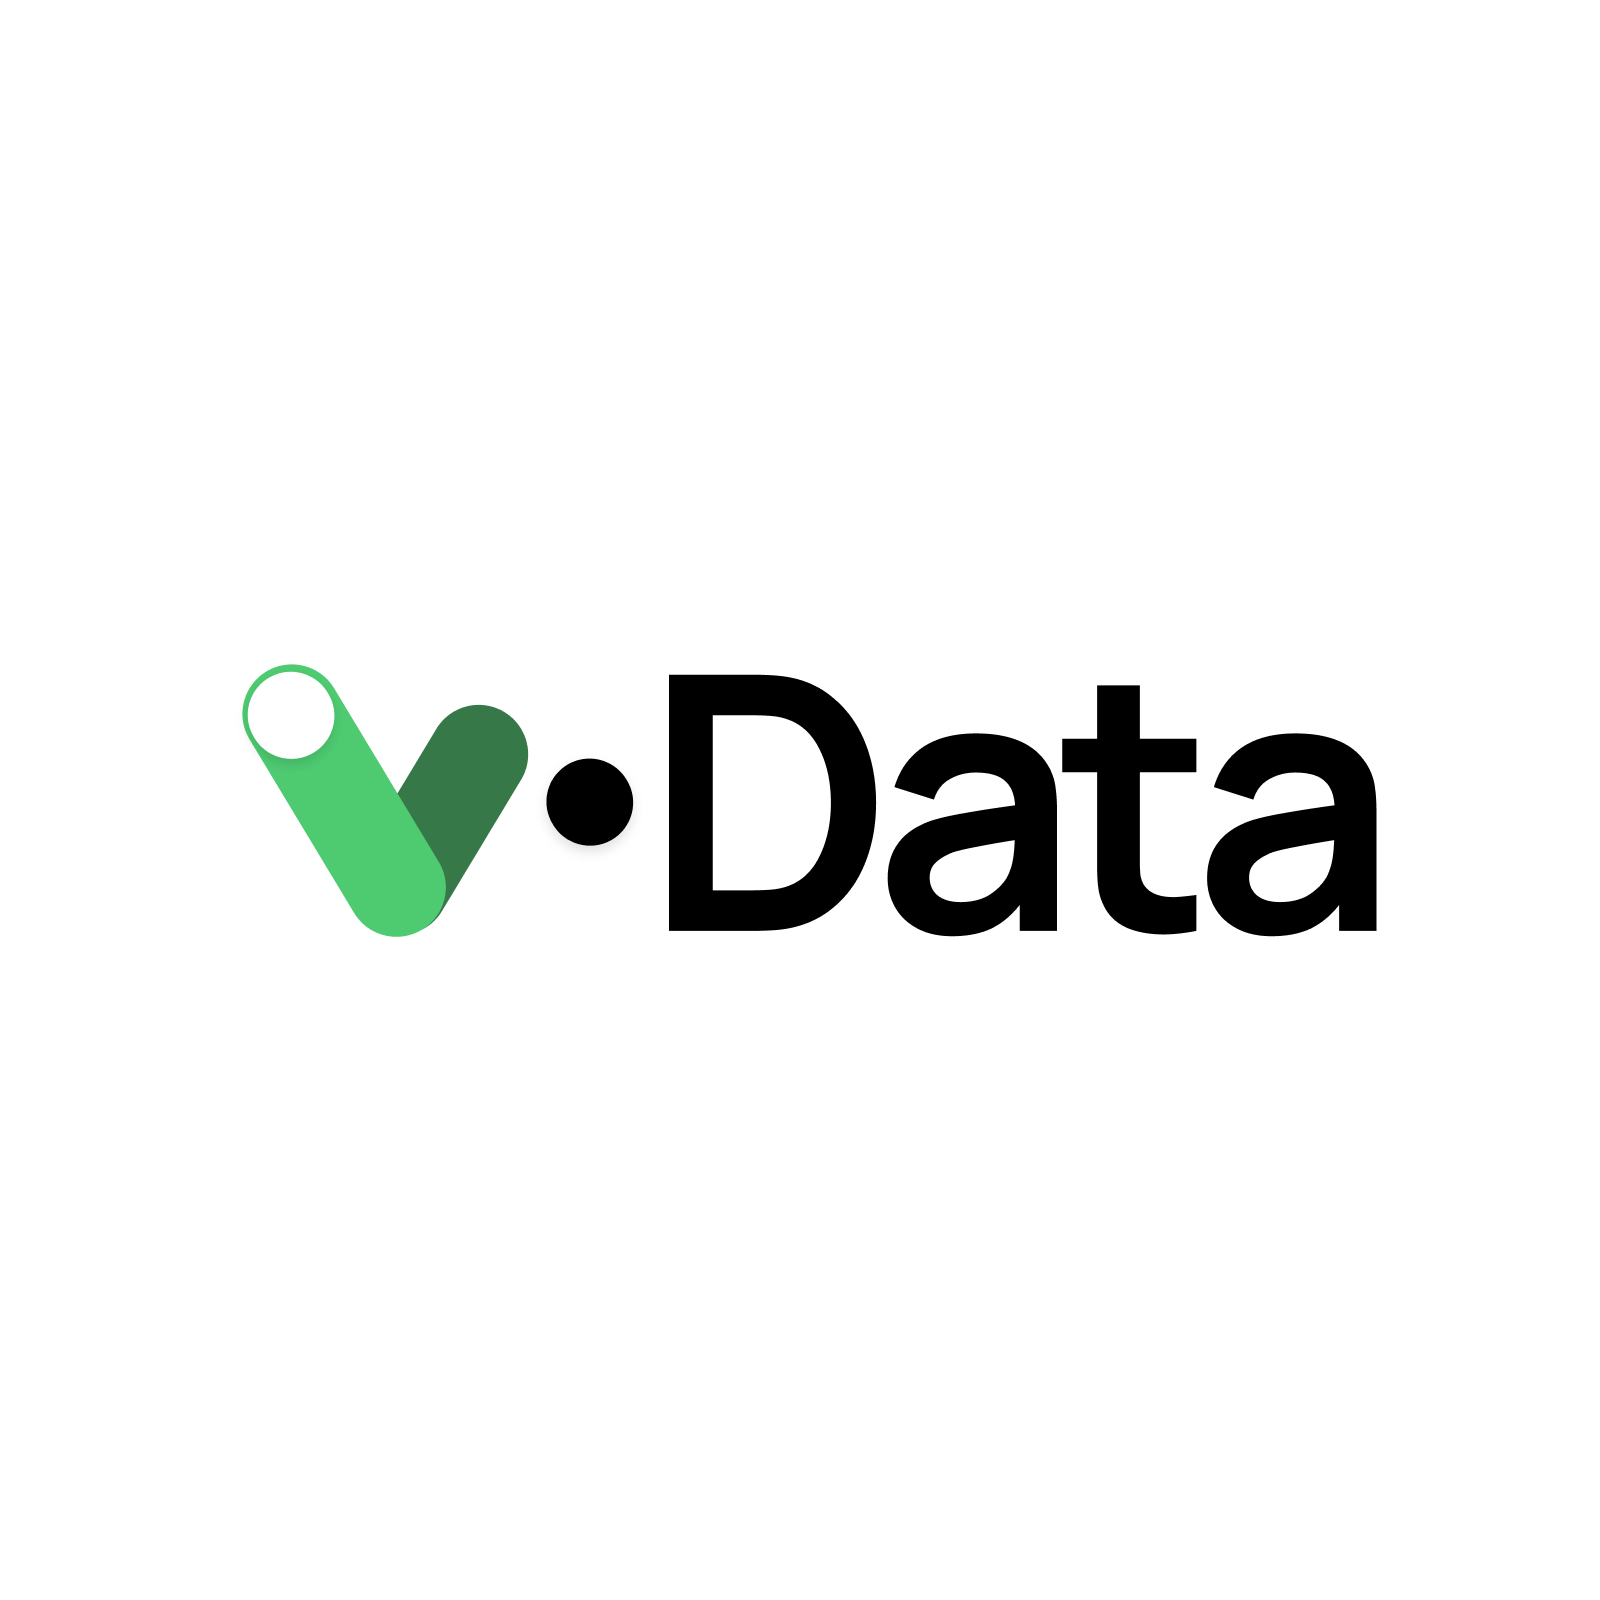 V-Data final conference